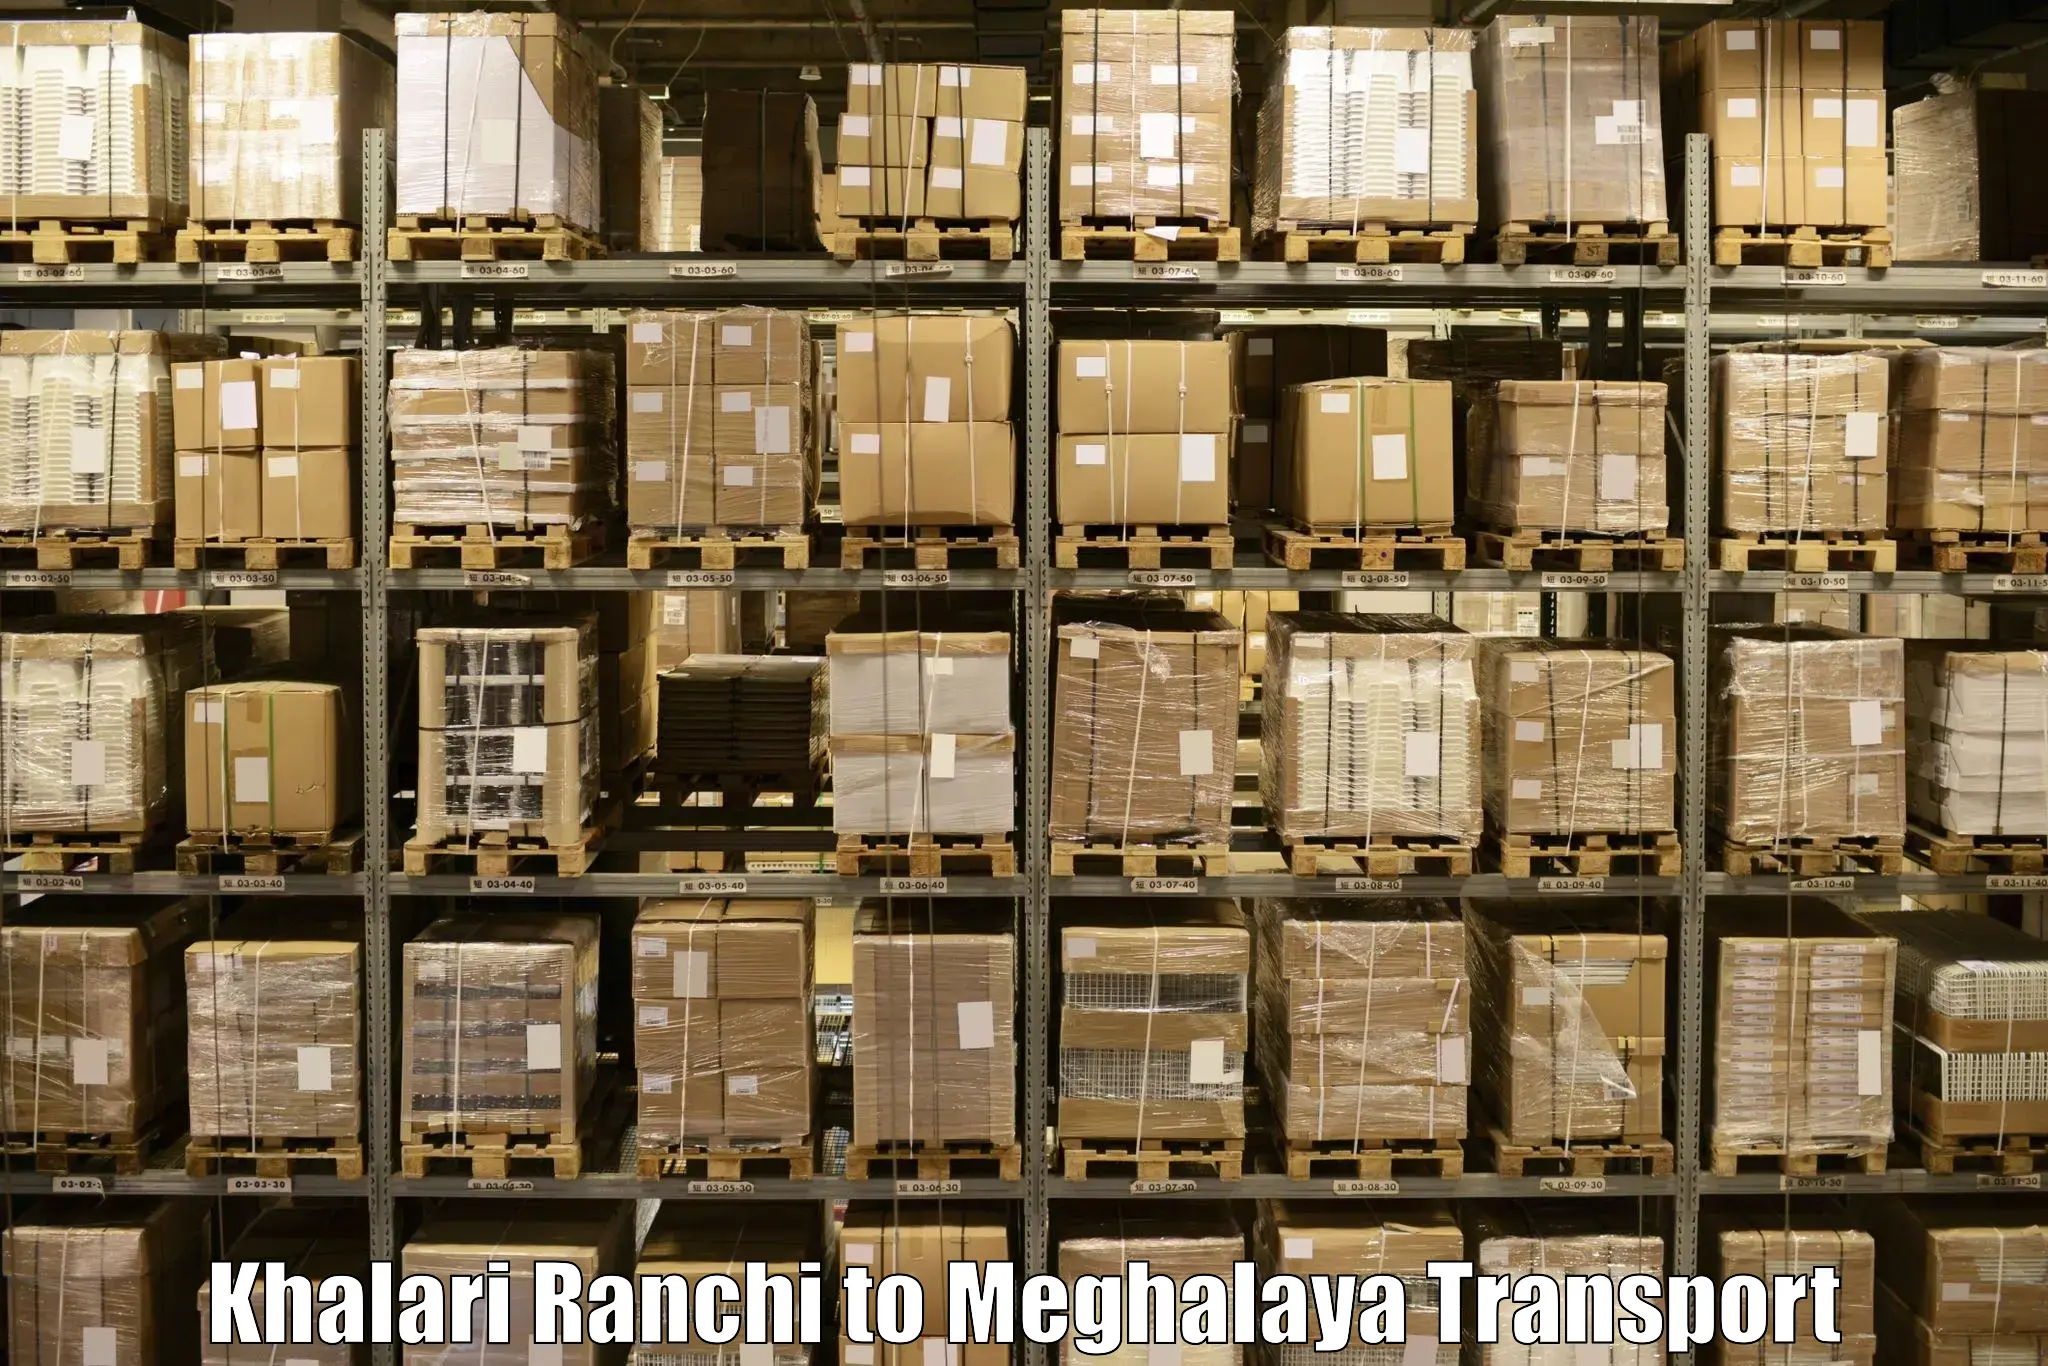 Two wheeler parcel service Khalari Ranchi to Meghalaya